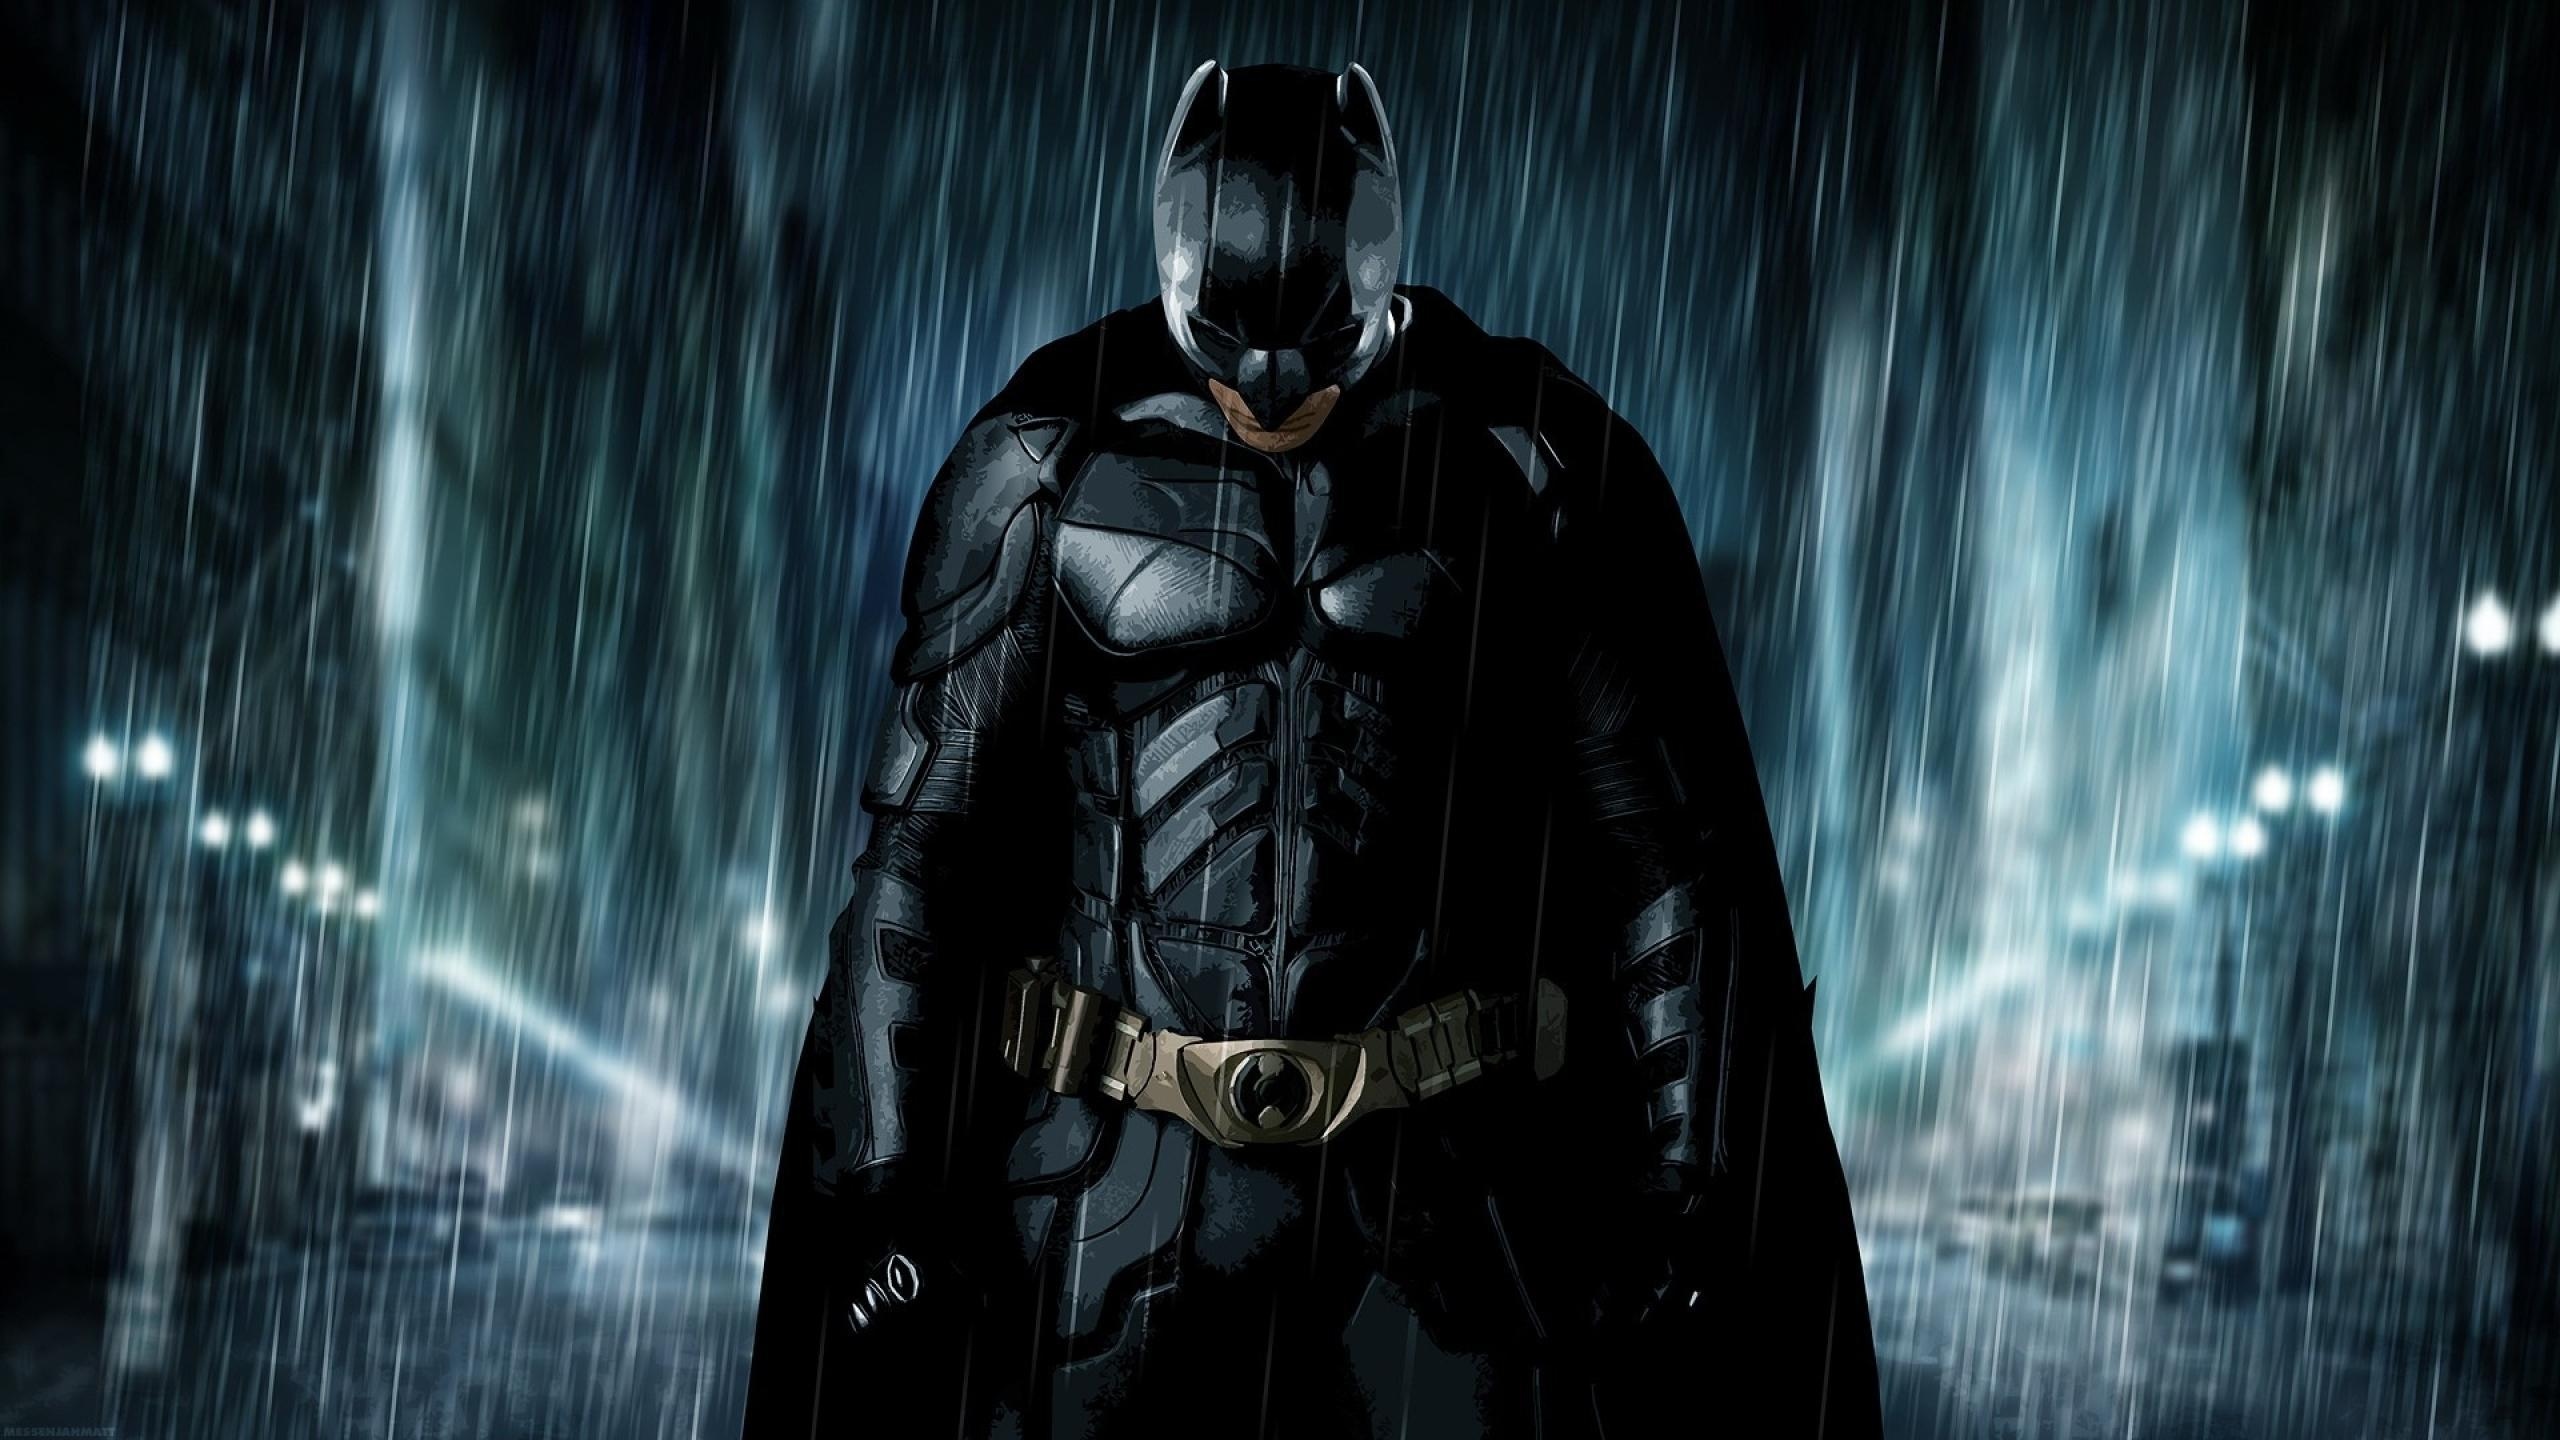 蝙蝠侠超级英雄蝙蝠侠黑暗骑士壁纸1600x900分辨率查看